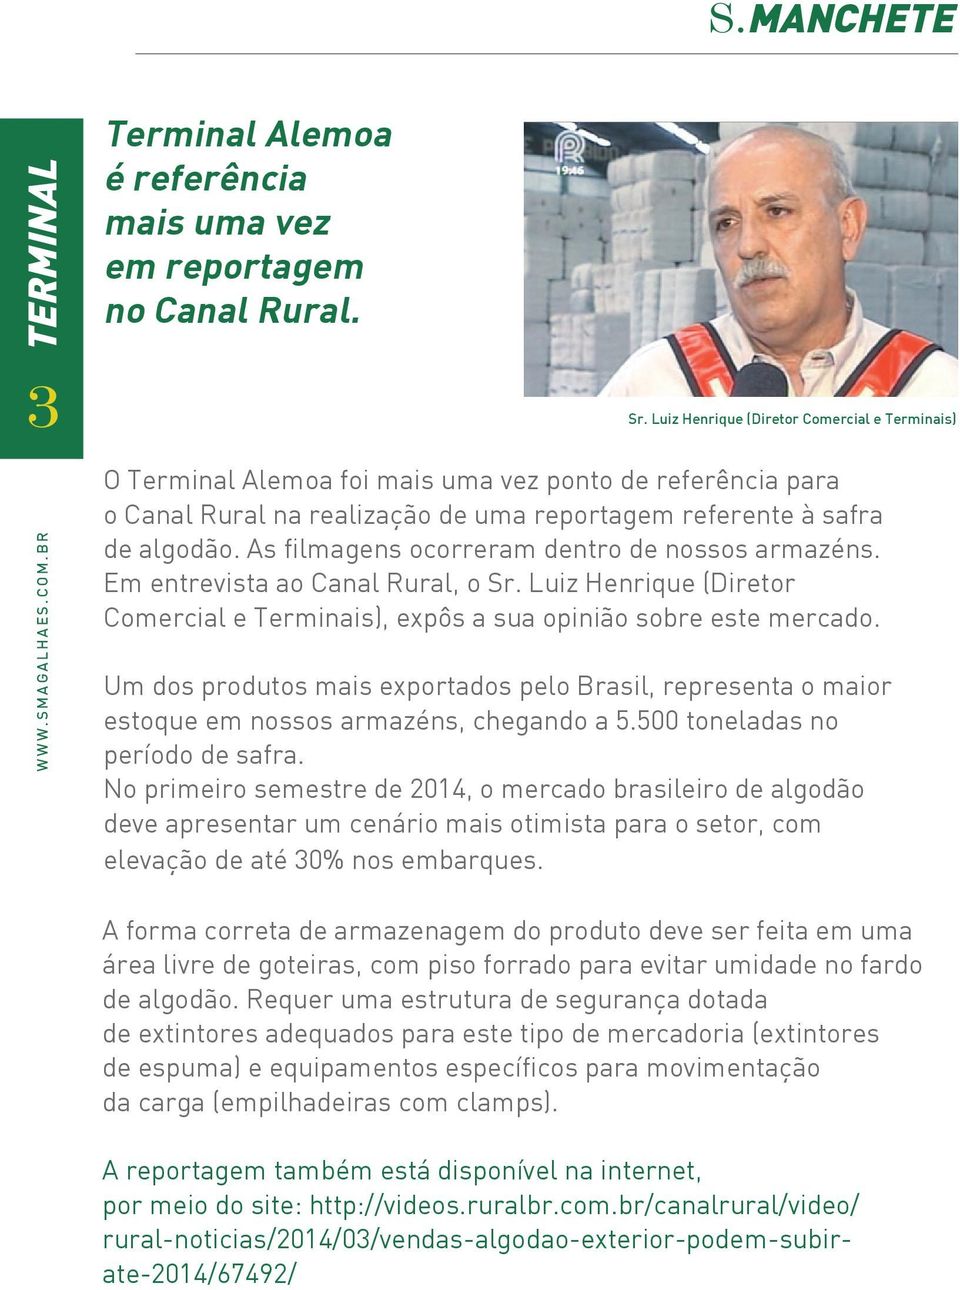 As filmagens ocorreram dentro de nossos armazéns. Em entrevista ao Canal Rural, o Sr. Luiz Henrique (Diretor Comercial e Terminais), expôs a sua opinião sobre este mercado.